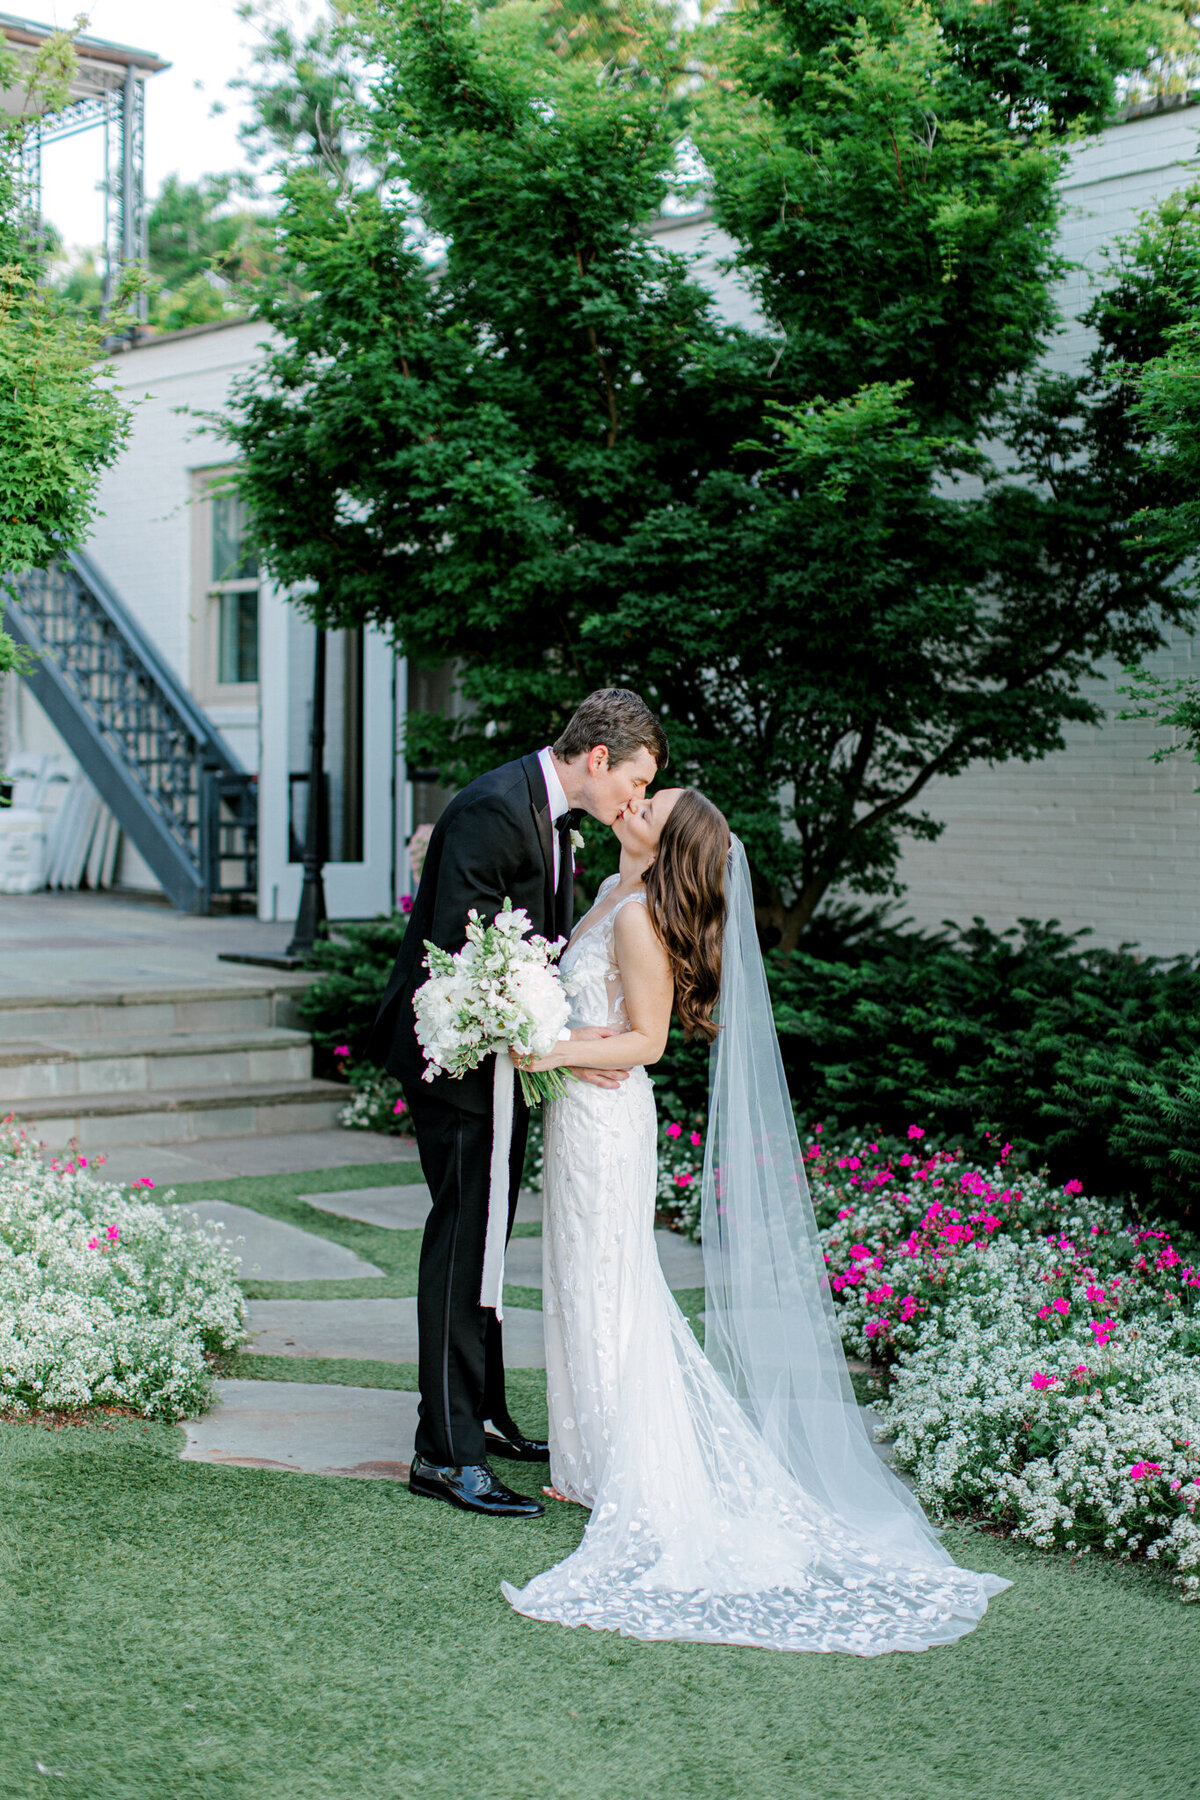 Gena & Matt's Wedding at the Dallas Arboretum | Dallas Wedding Photographer | Sami Kathryn Photography-176